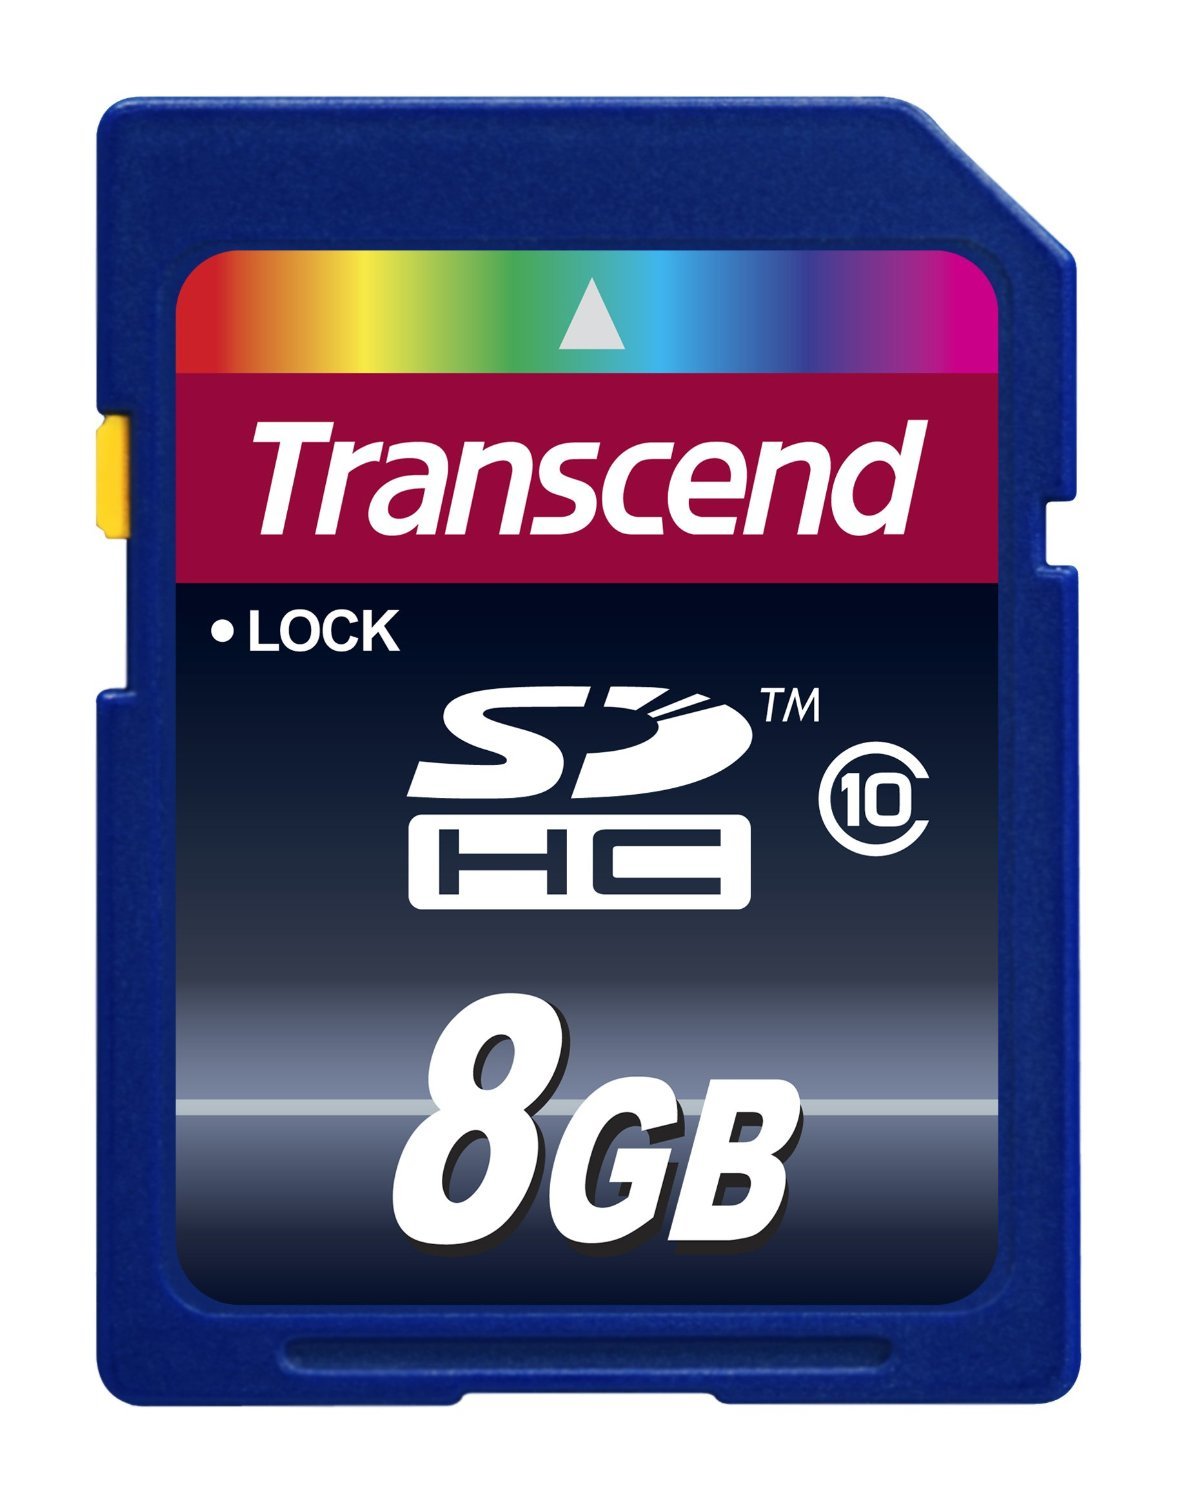 Memory: 8 GB RAM
Storage: Minimum 10 GB available space